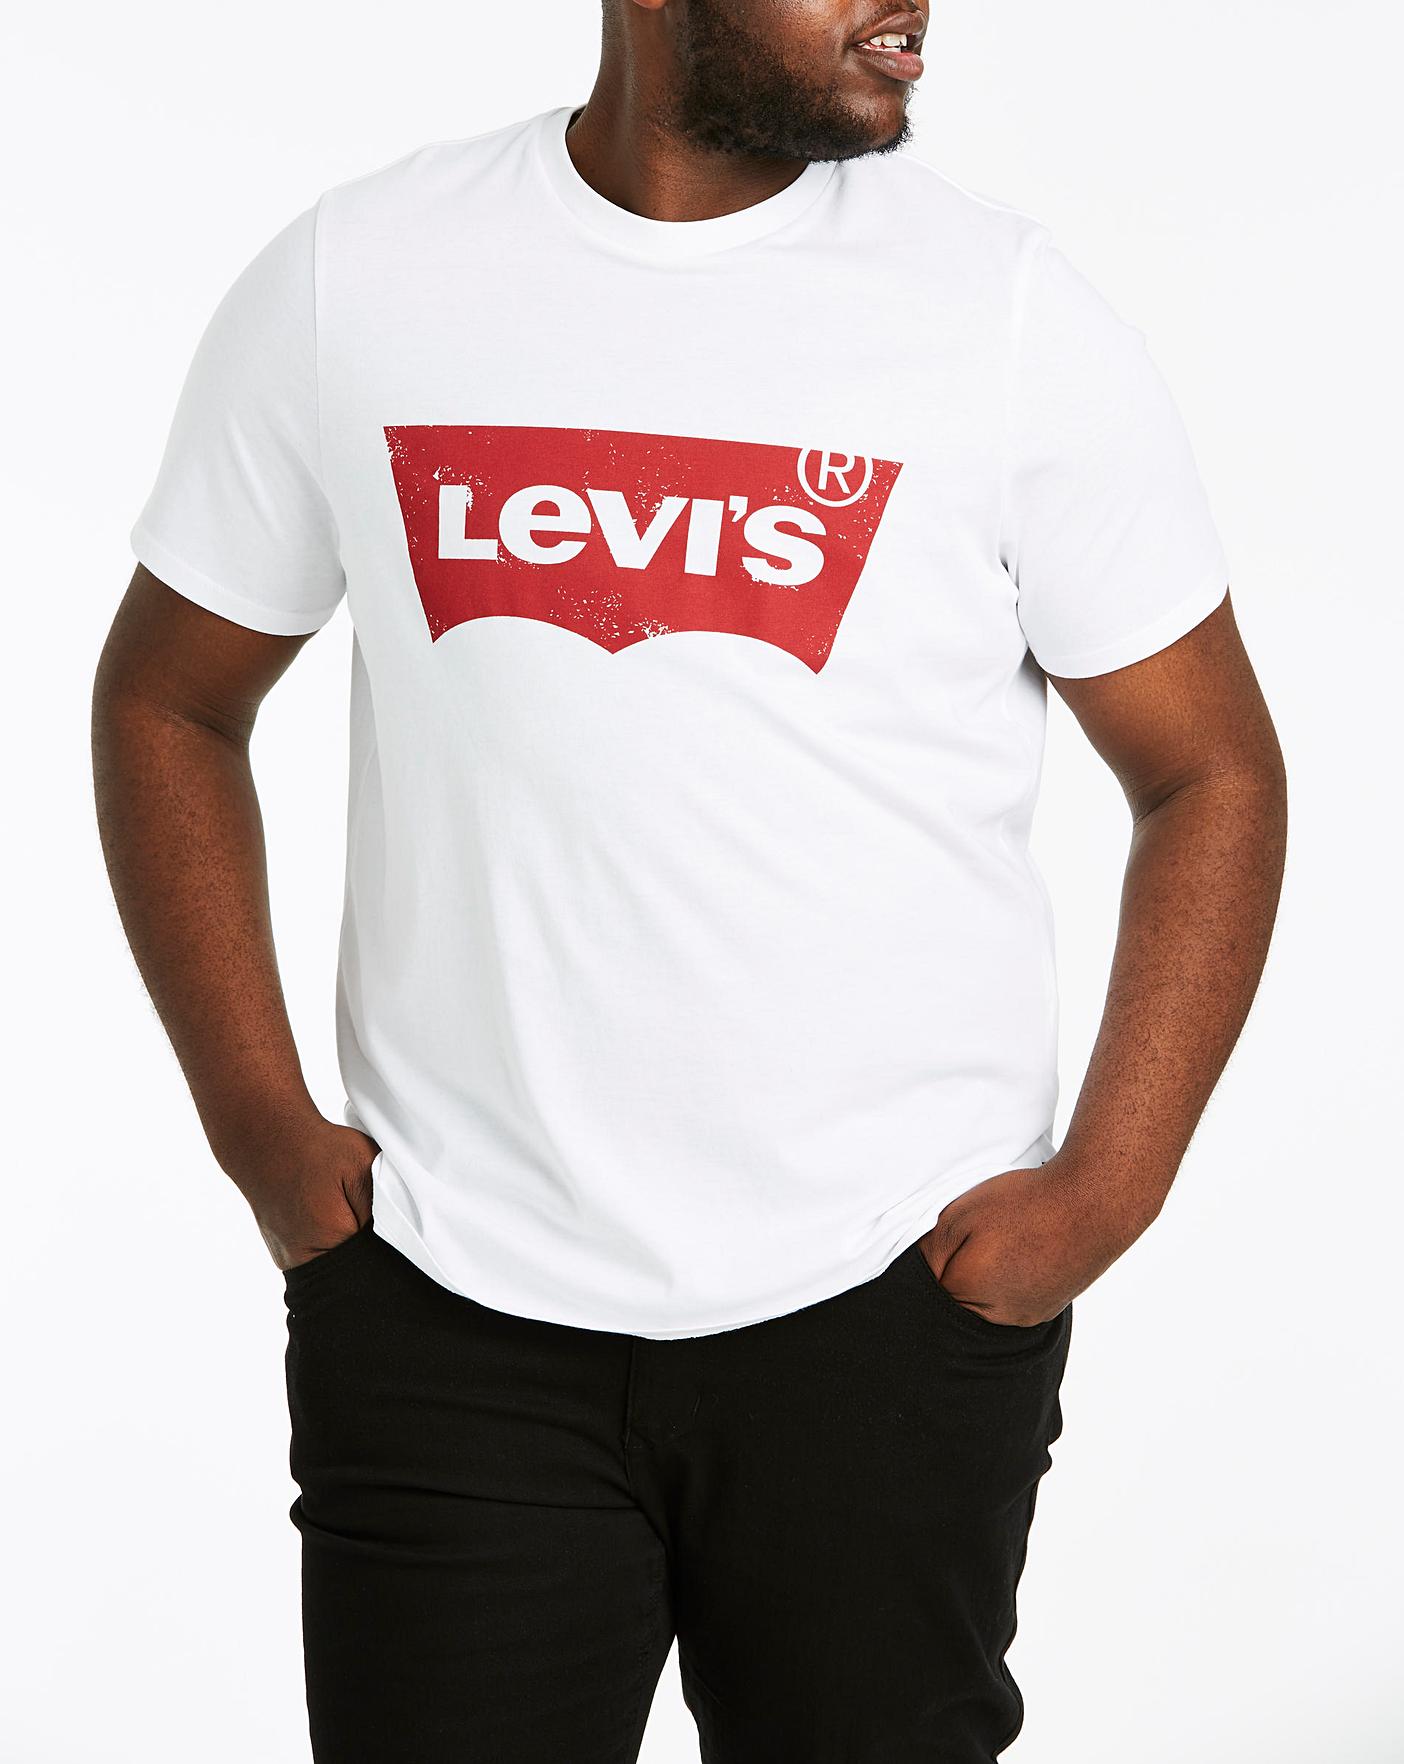 levi's white t shirt